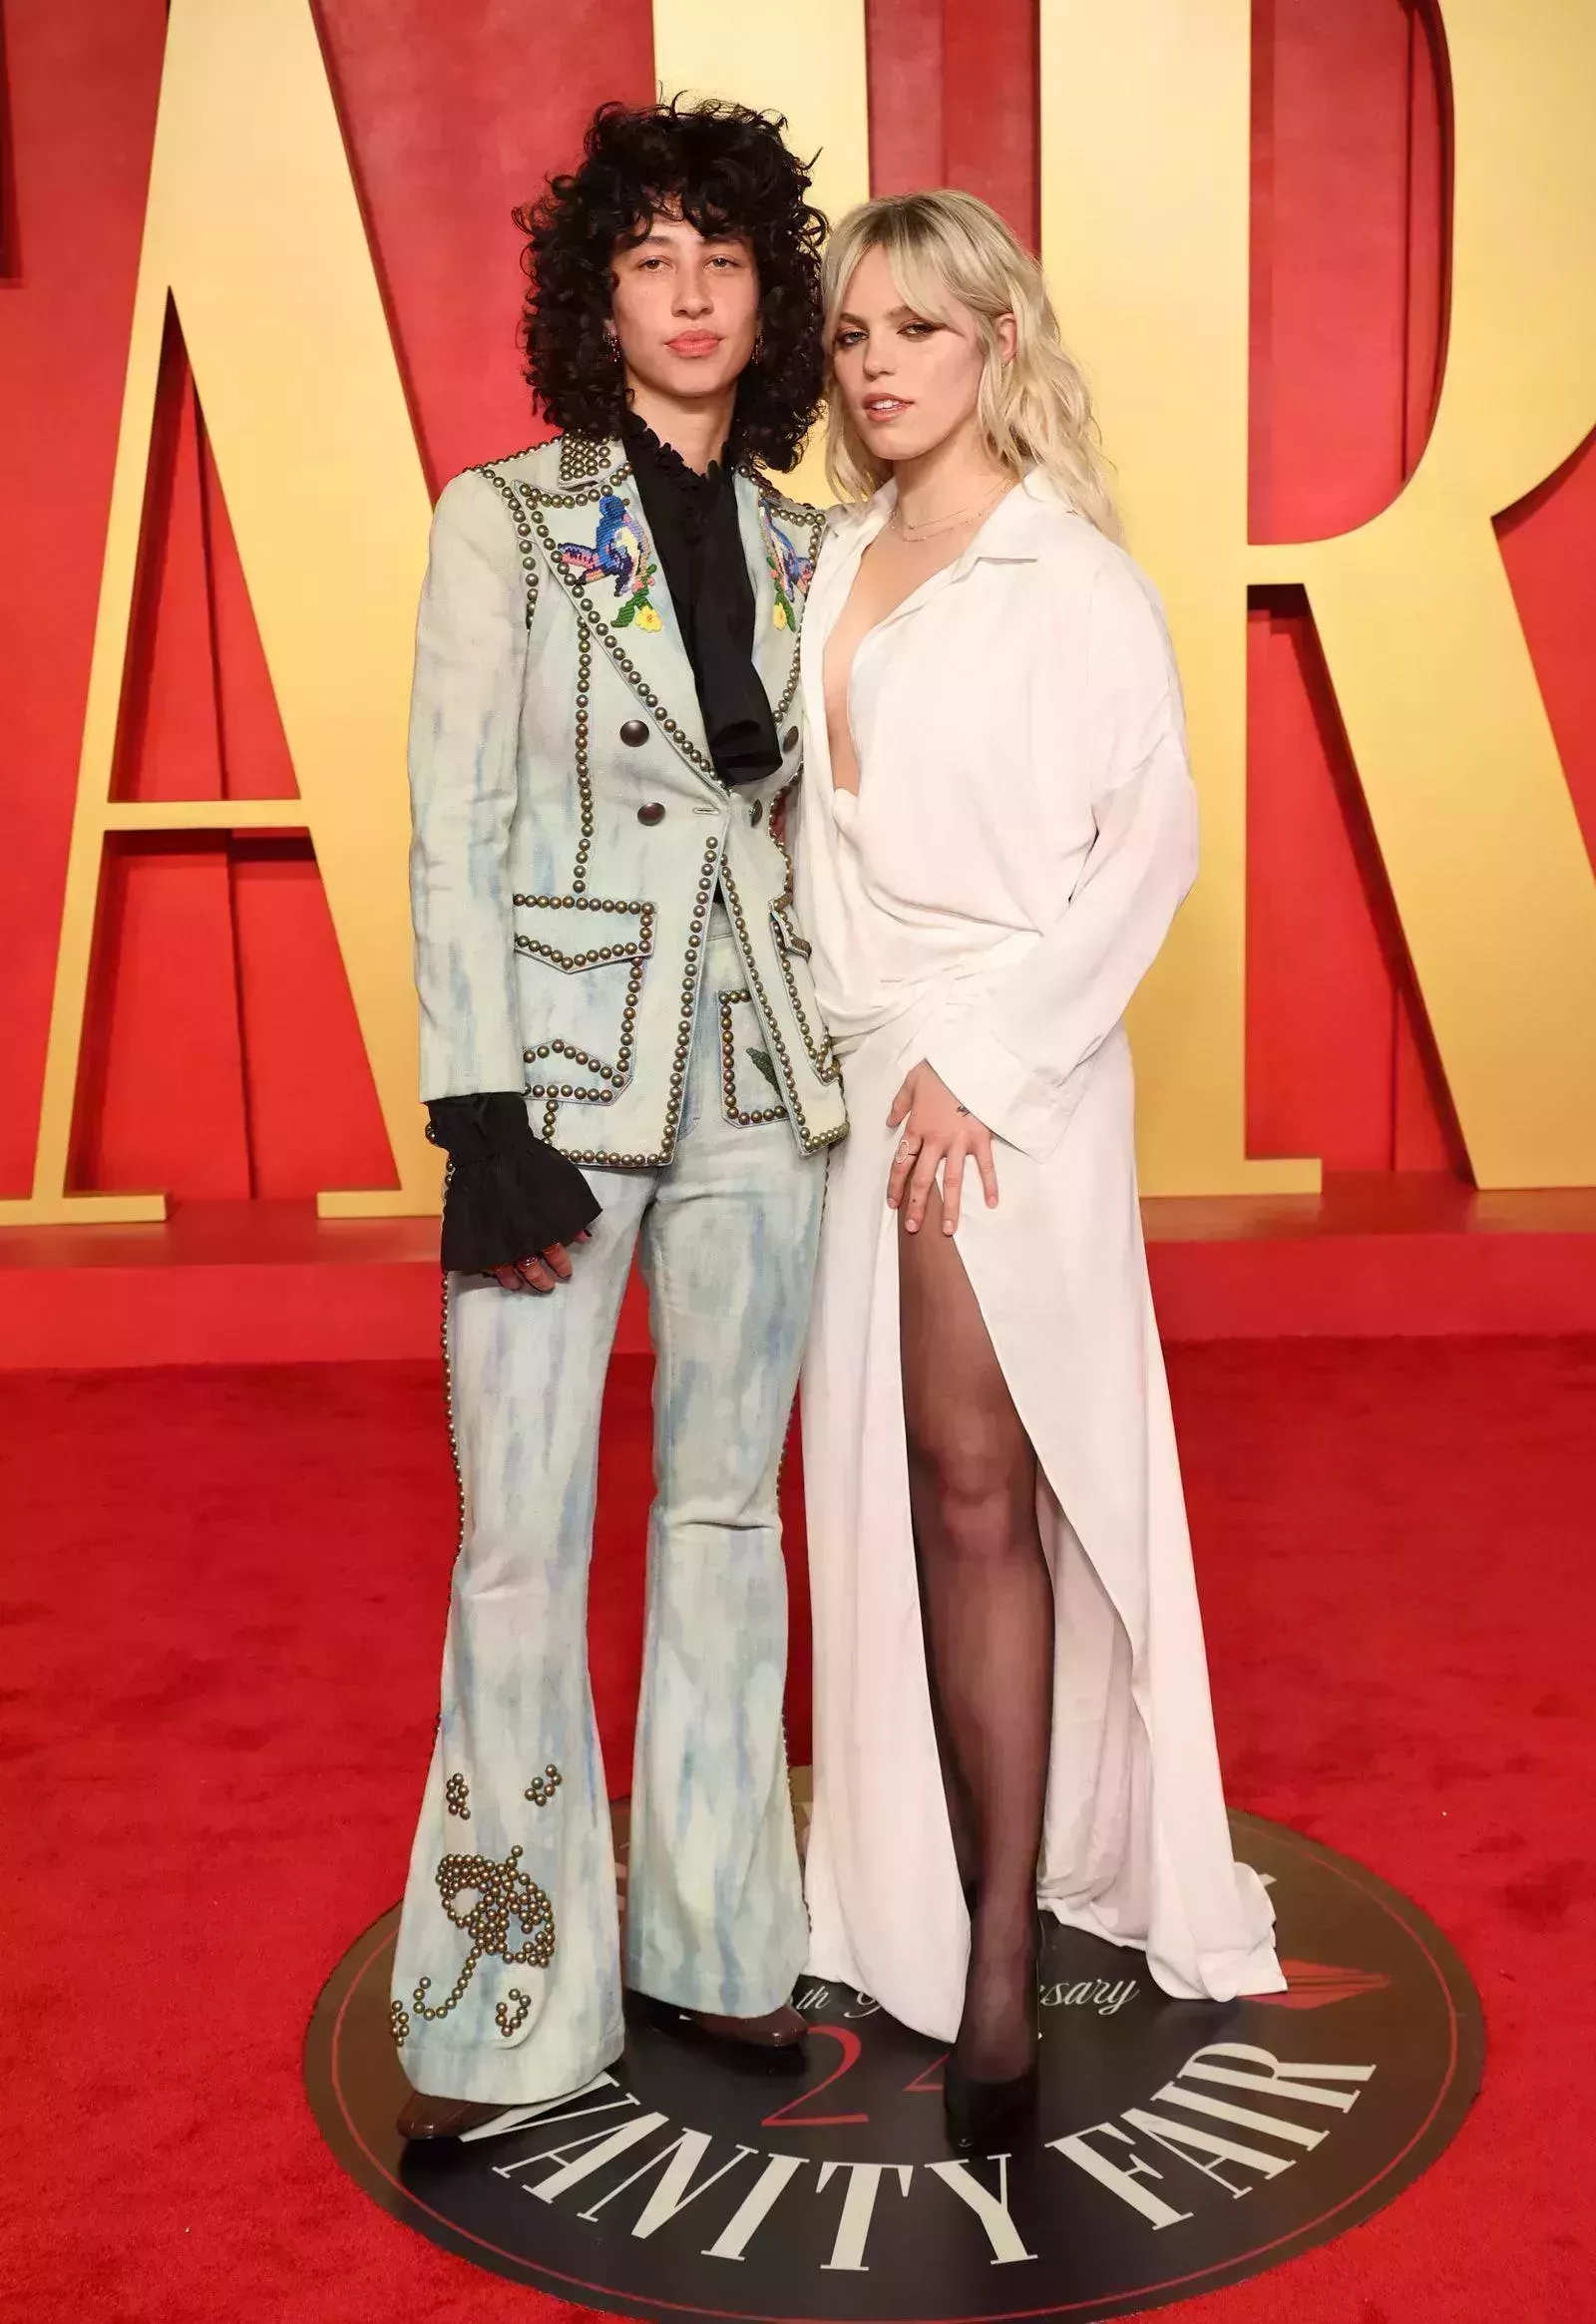 Reneé Rapp y Towa Bird se lanzan con fuerza en la alfombra roja de la fiesta posterior a los Oscars